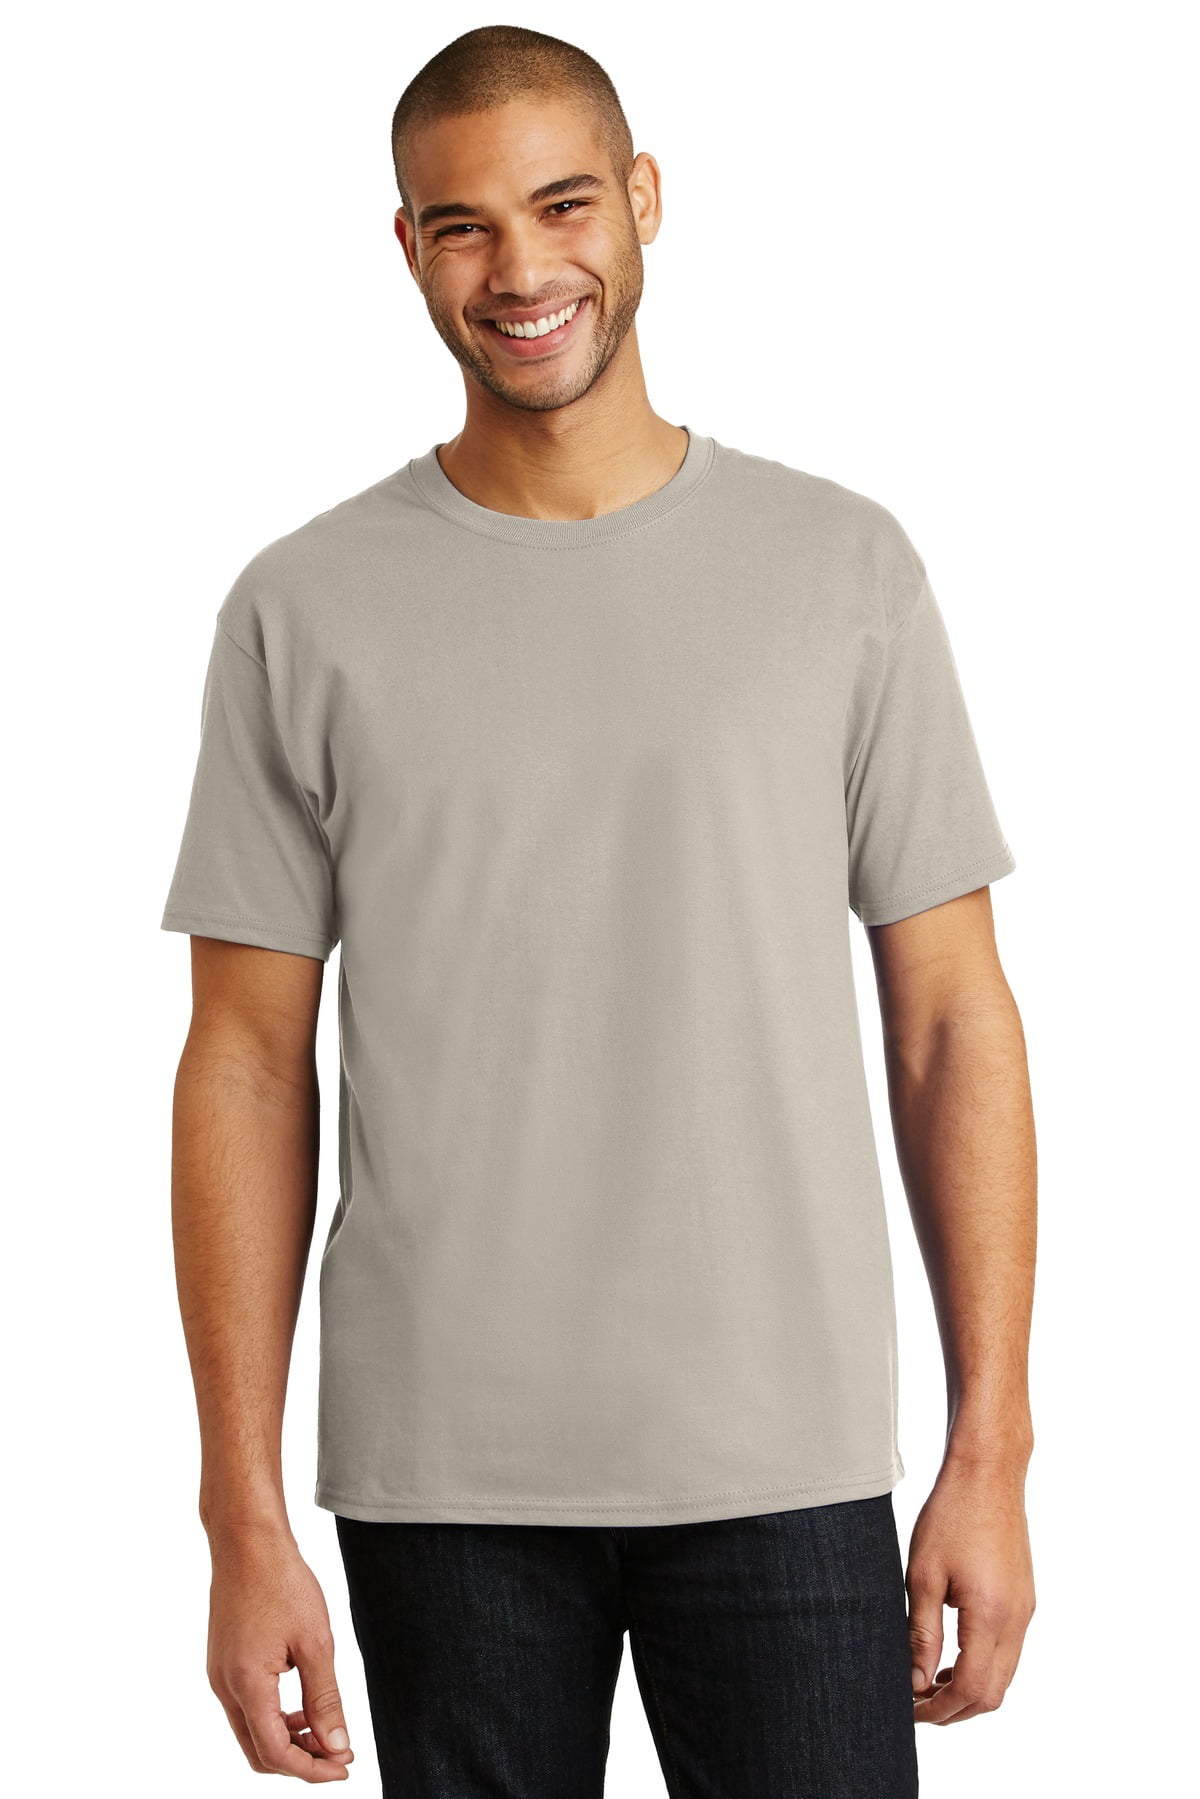 Tagless 100% Cotton T-Shirt - Walmart.com